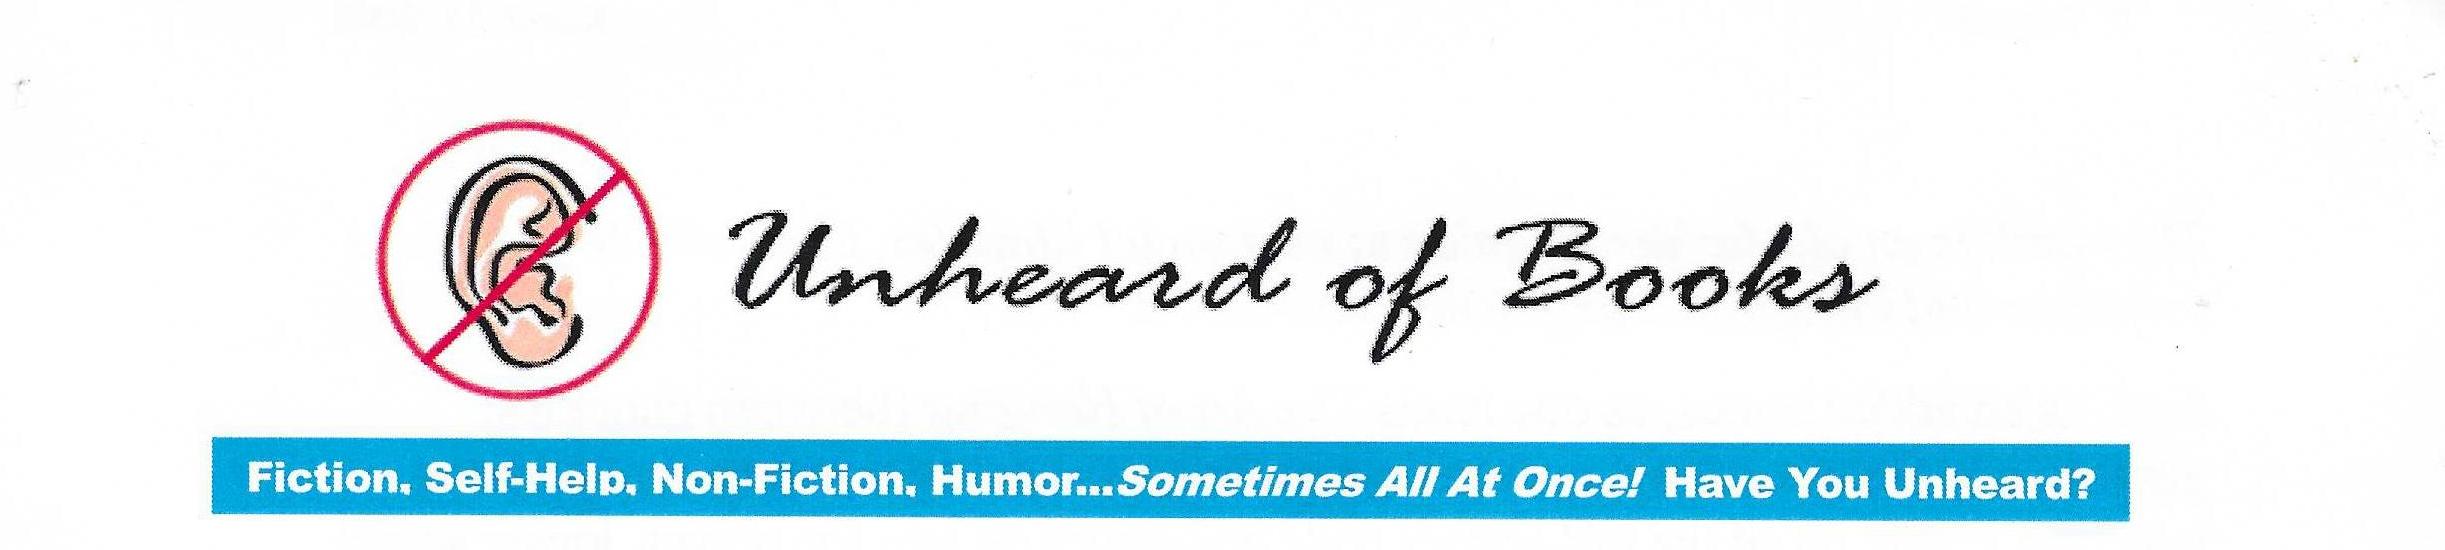 Unheard of Books Logo letter header